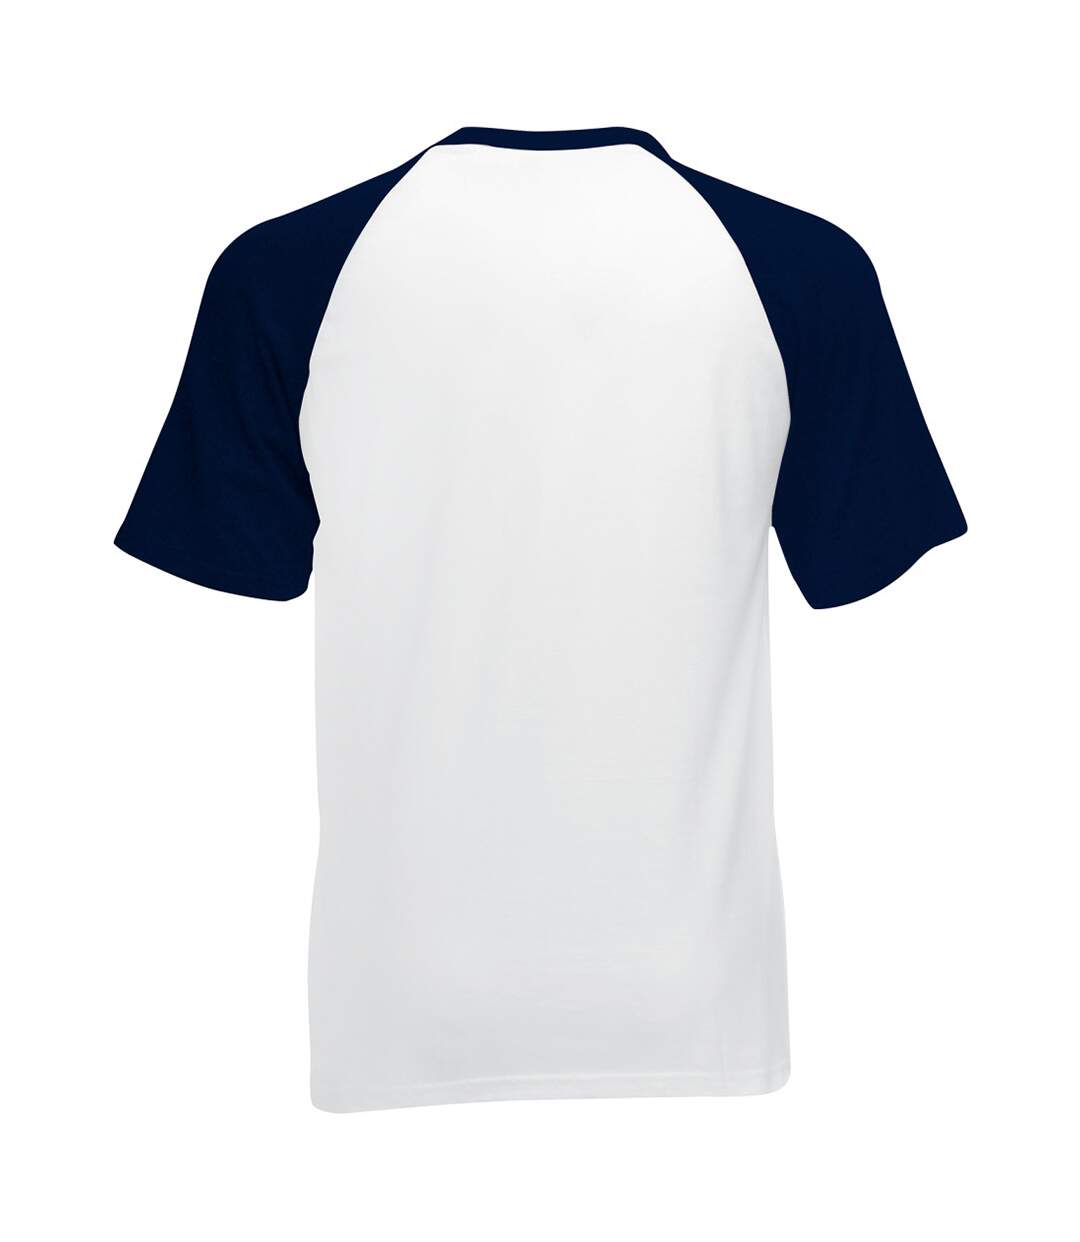 Fruit Of The Loom Mens Short Sleeve Baseball T-Shirt (White/Deep Navy)